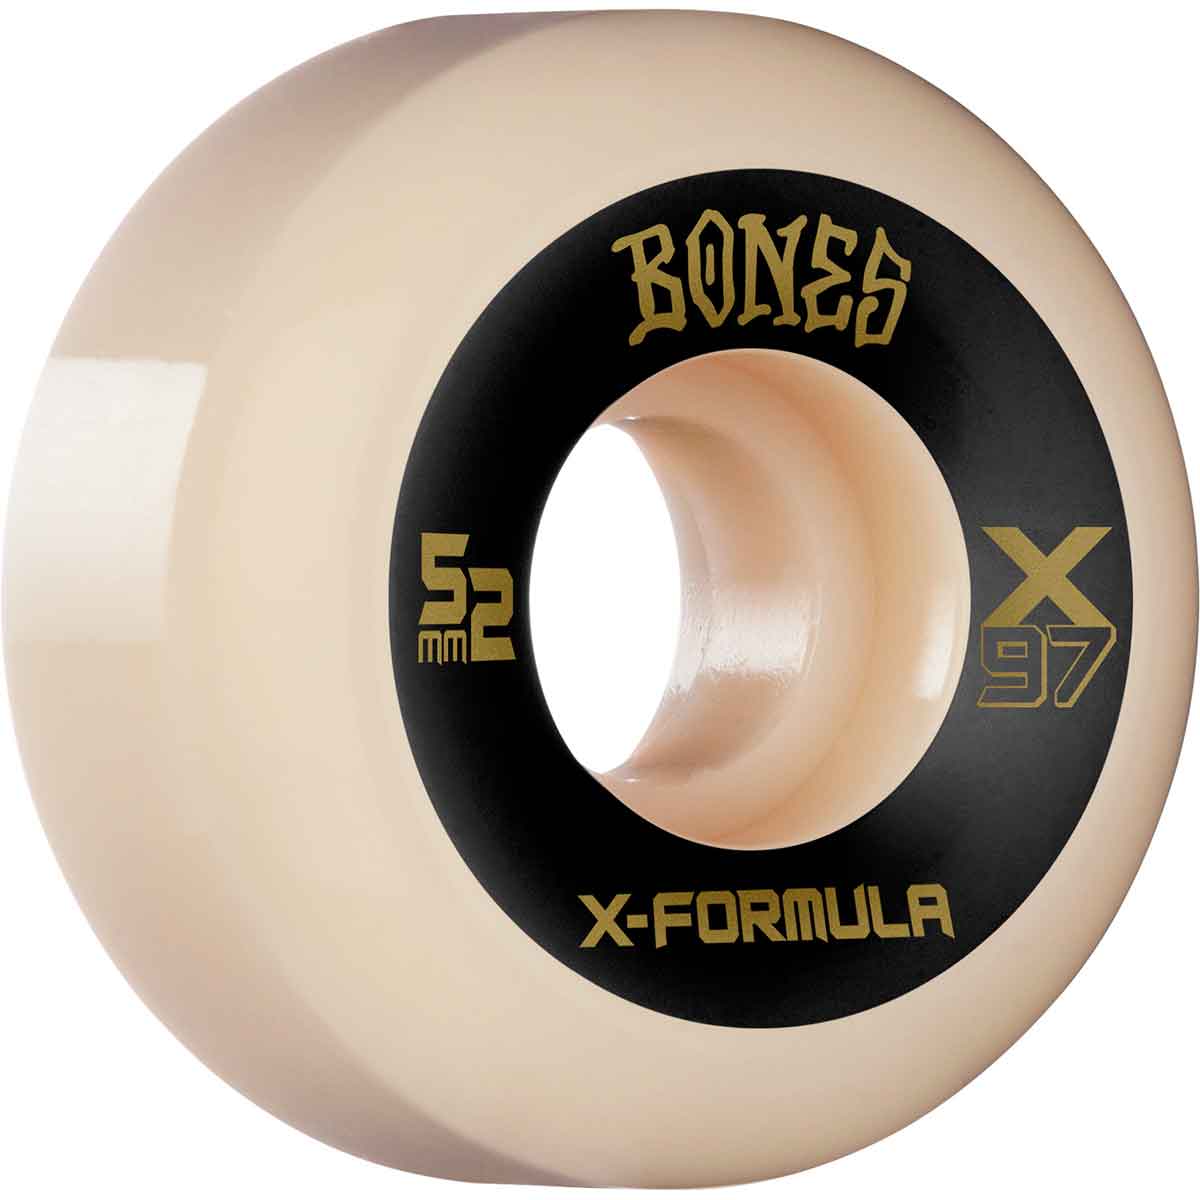 BONES X-FORMULA WHEELS - 97A